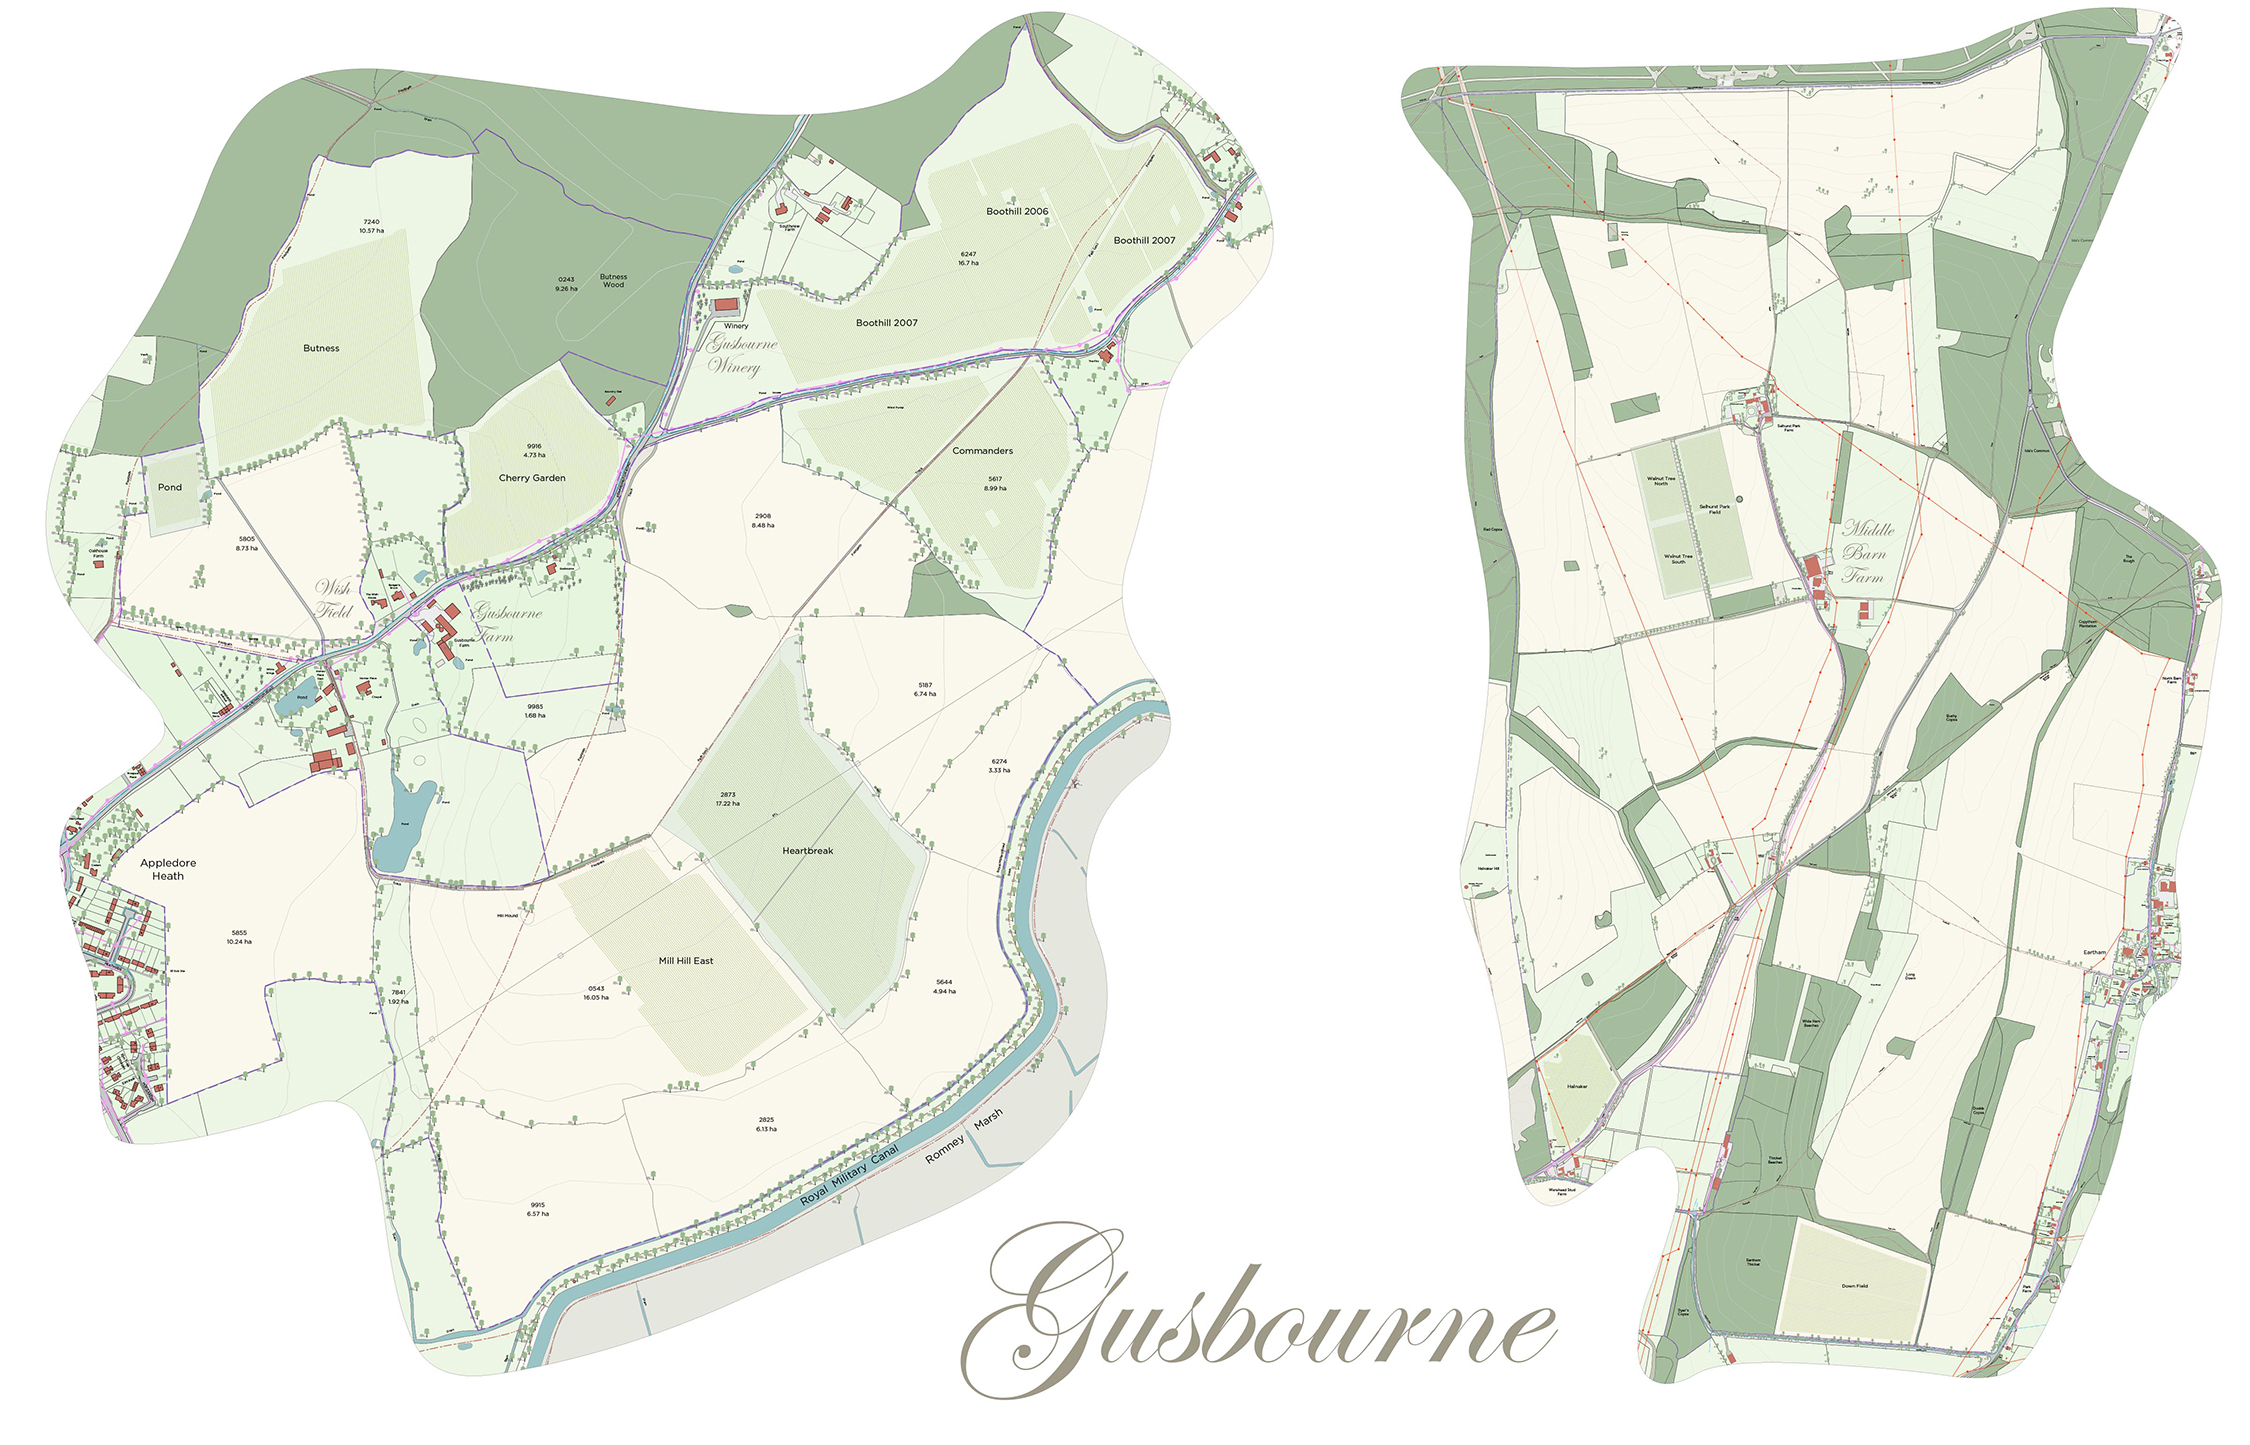 Gusbourne vineyard site